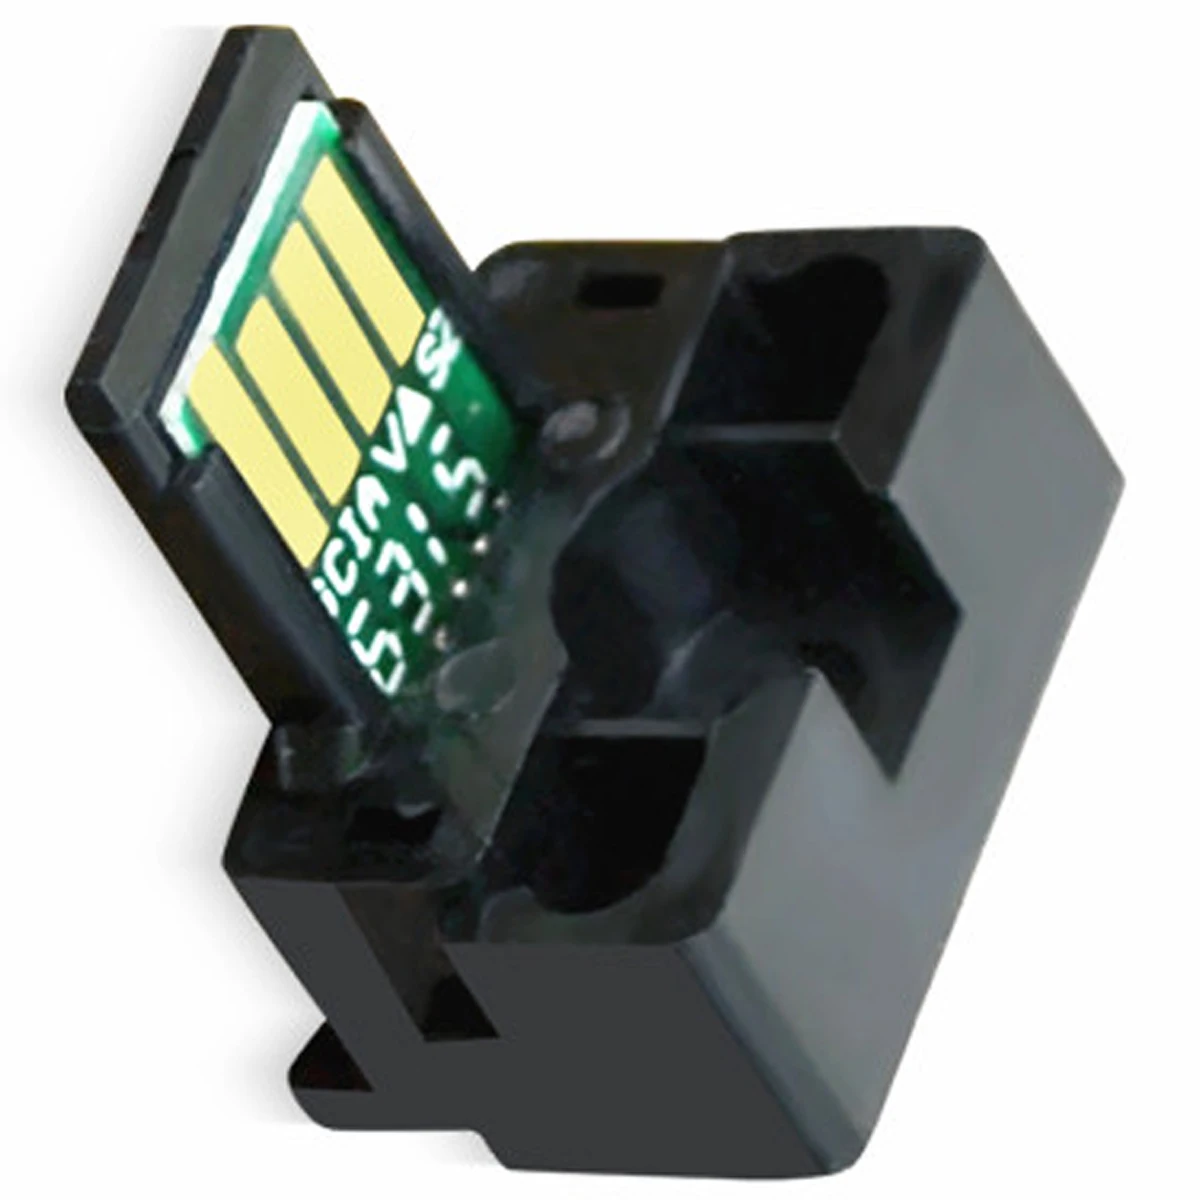 

Toner Chip Refill Kits For Sharp MXB-42-XT MXB-42-ST-C MXB-42-CT MXB-42-AT MXB-42-NT1 MXB-42-GT1 MXB-42-MT MXB-42 TD MXB-42 ST